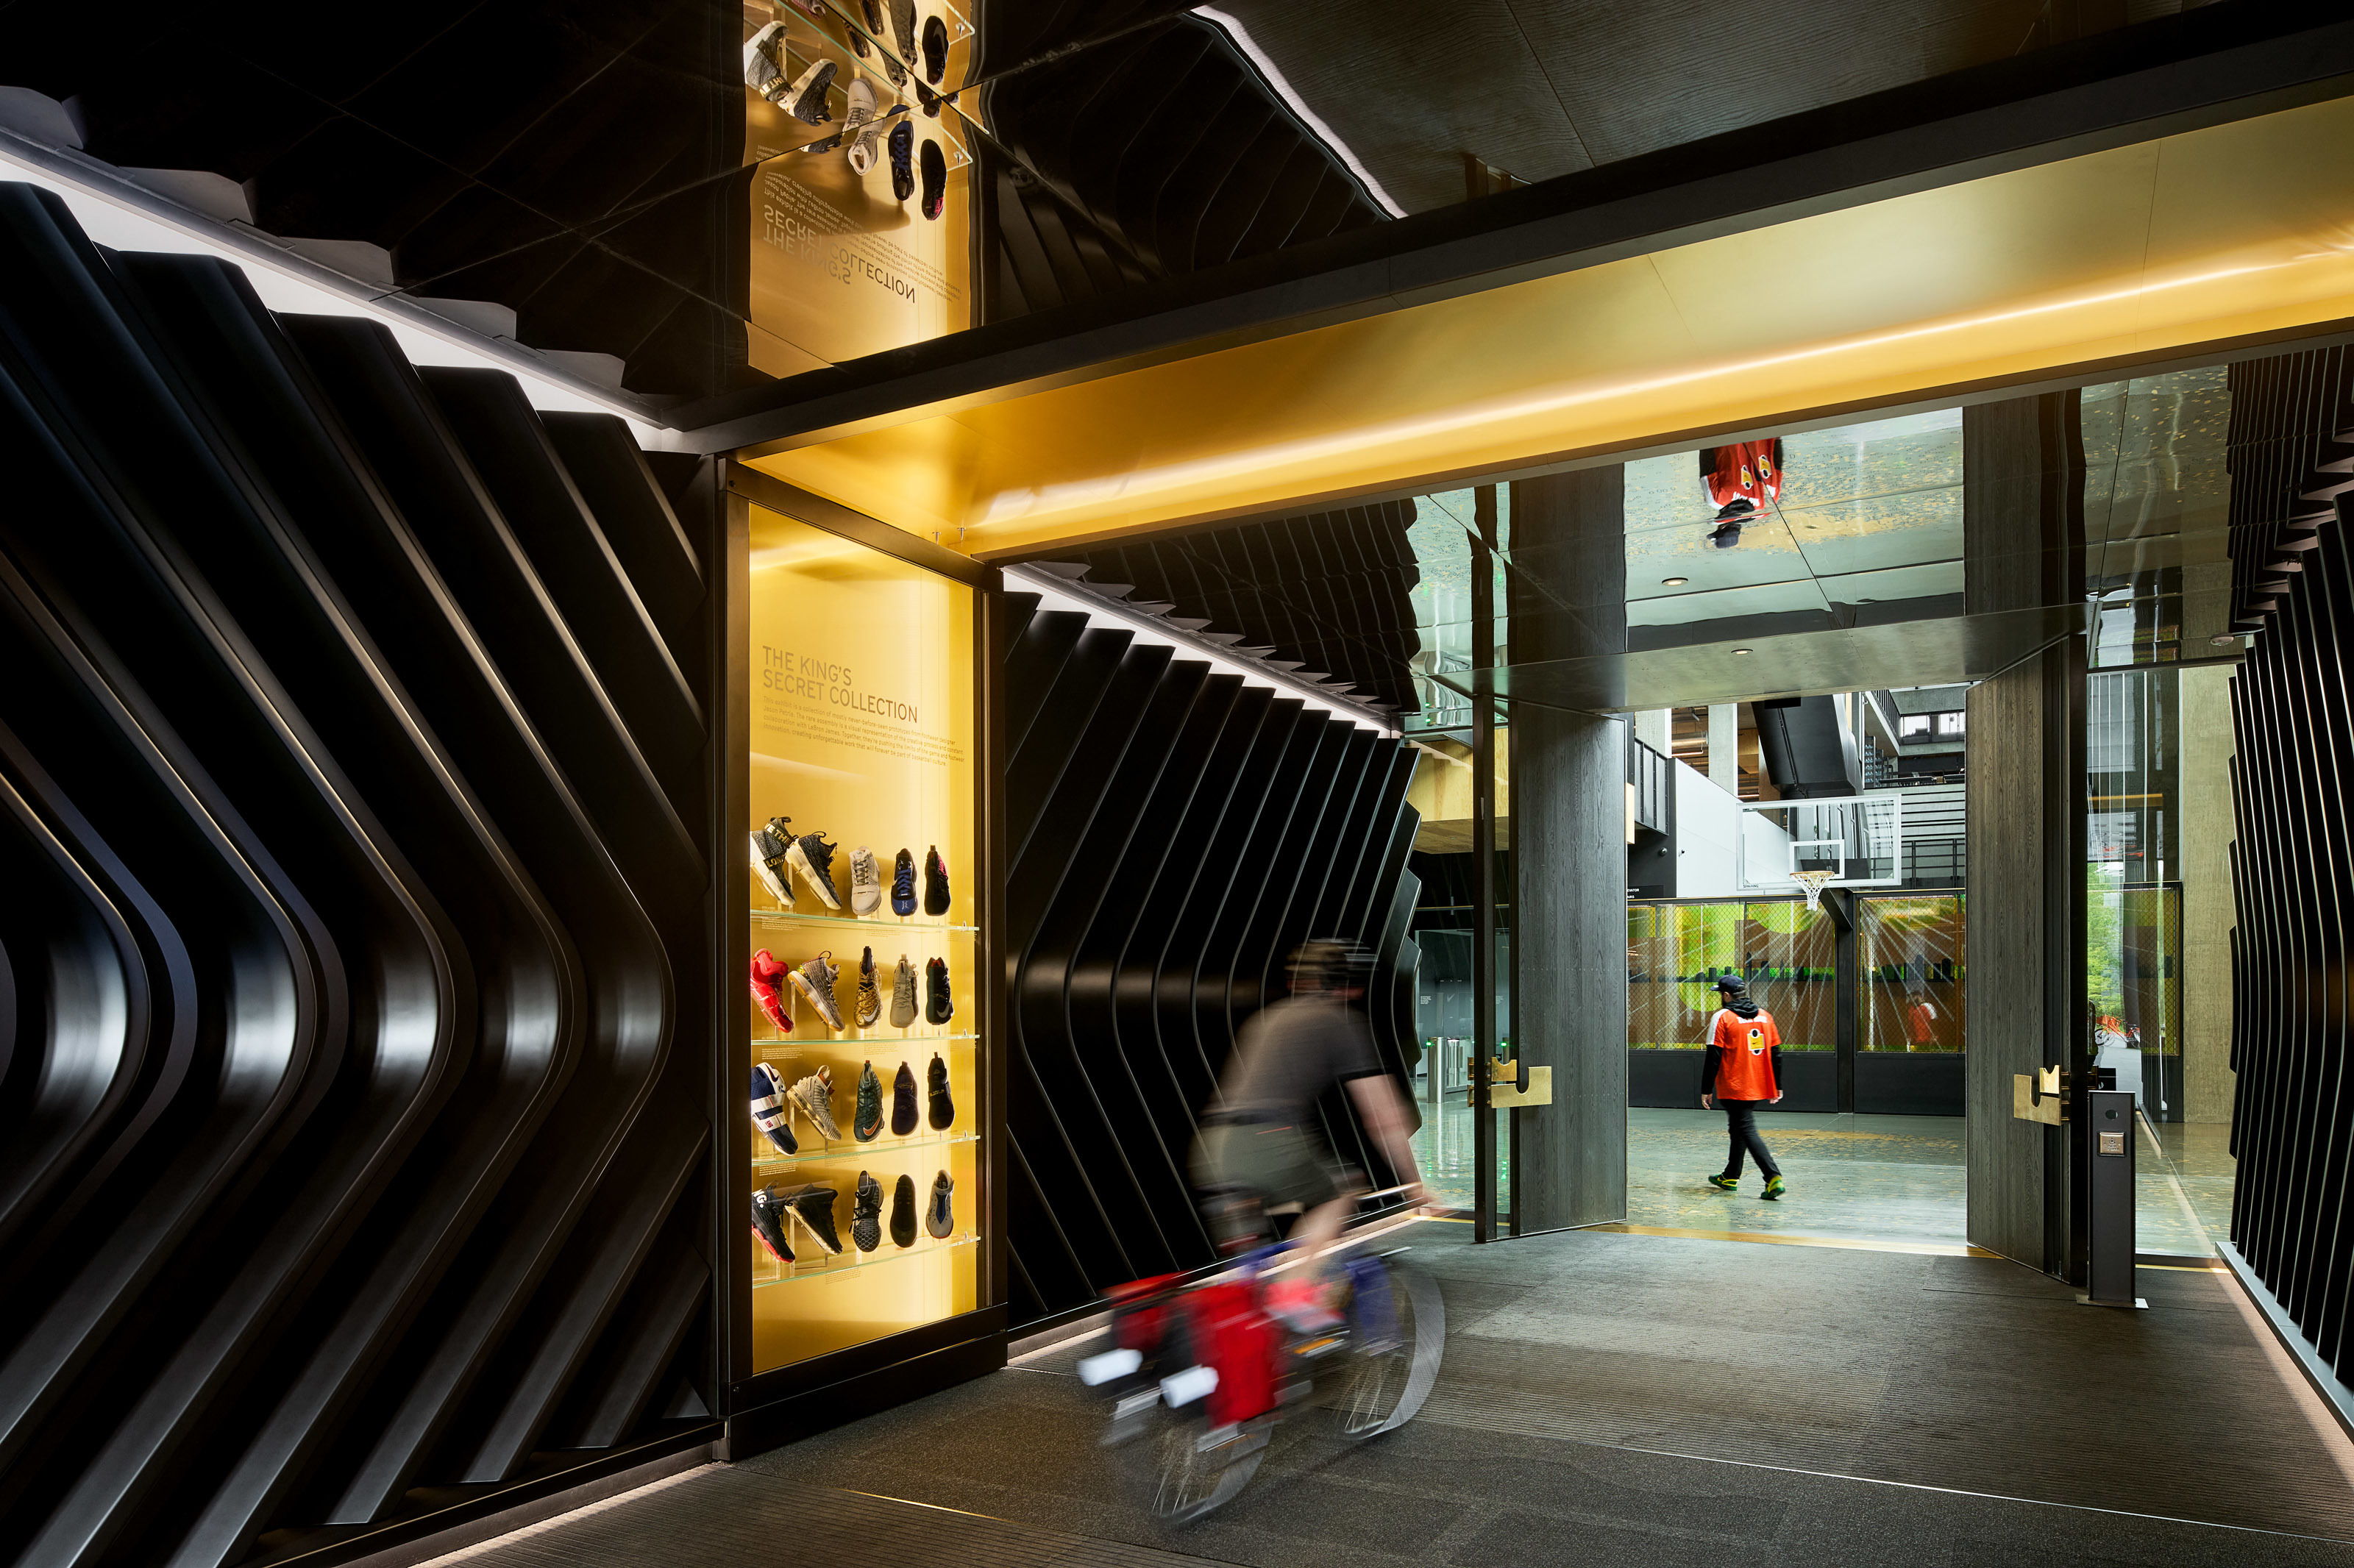 LeBron James Innovation Center at Nike World Headquarters, Designed by Olson Kundig - Imagery courtesy of Nike